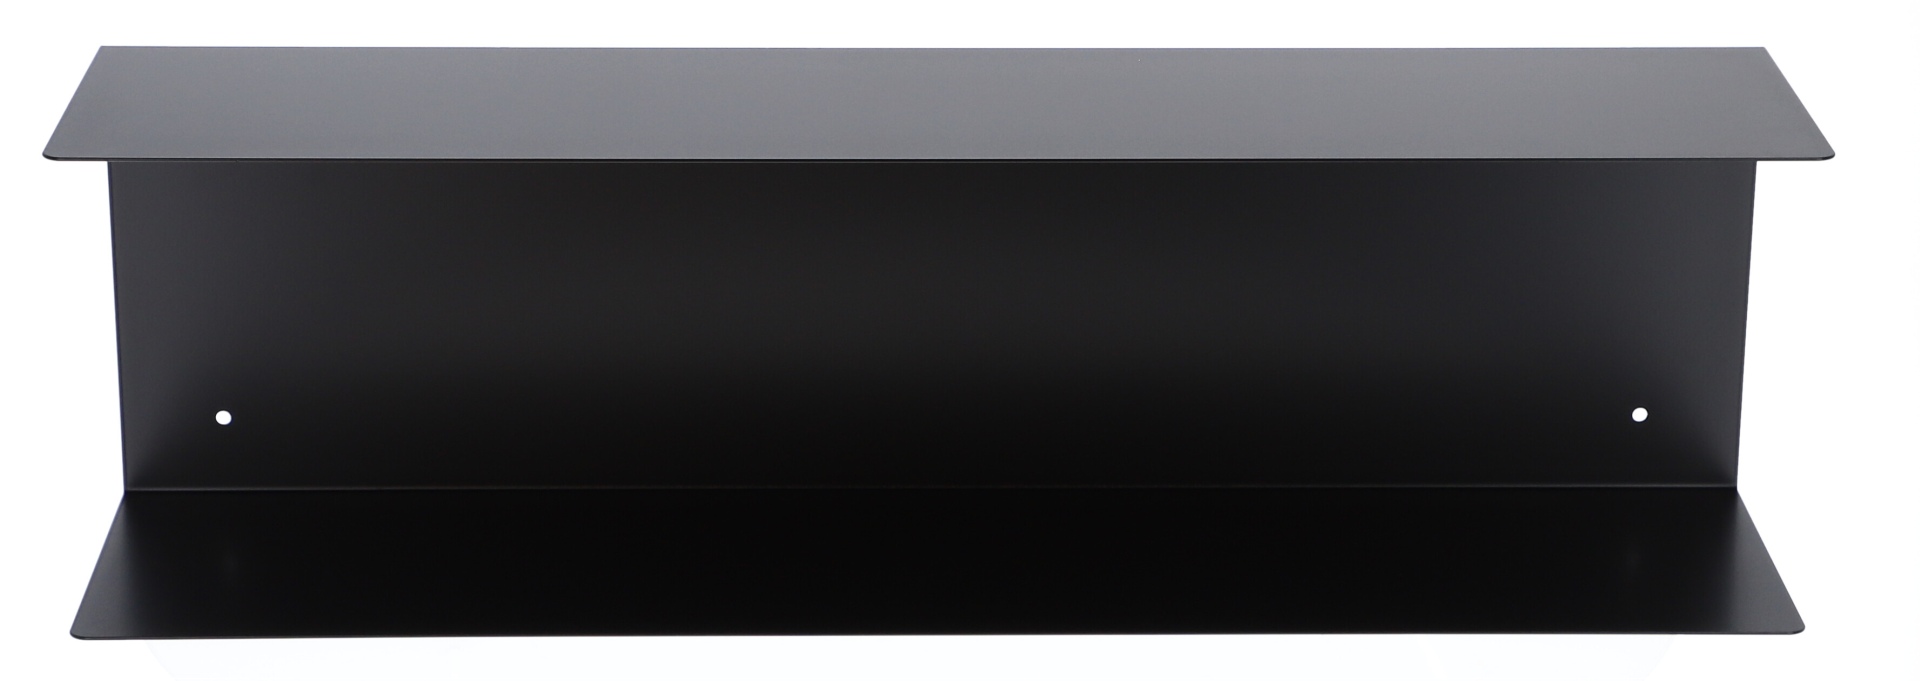 Das Wandregal Fleur wurde aus Metall gefertigt und hat einen schwarzen Farbton. Die Breite beträgt 80 cm. Das Design ist schlicht aber auch modern. Das Regal ist ein Produkt der Marke Jan Kurtz.